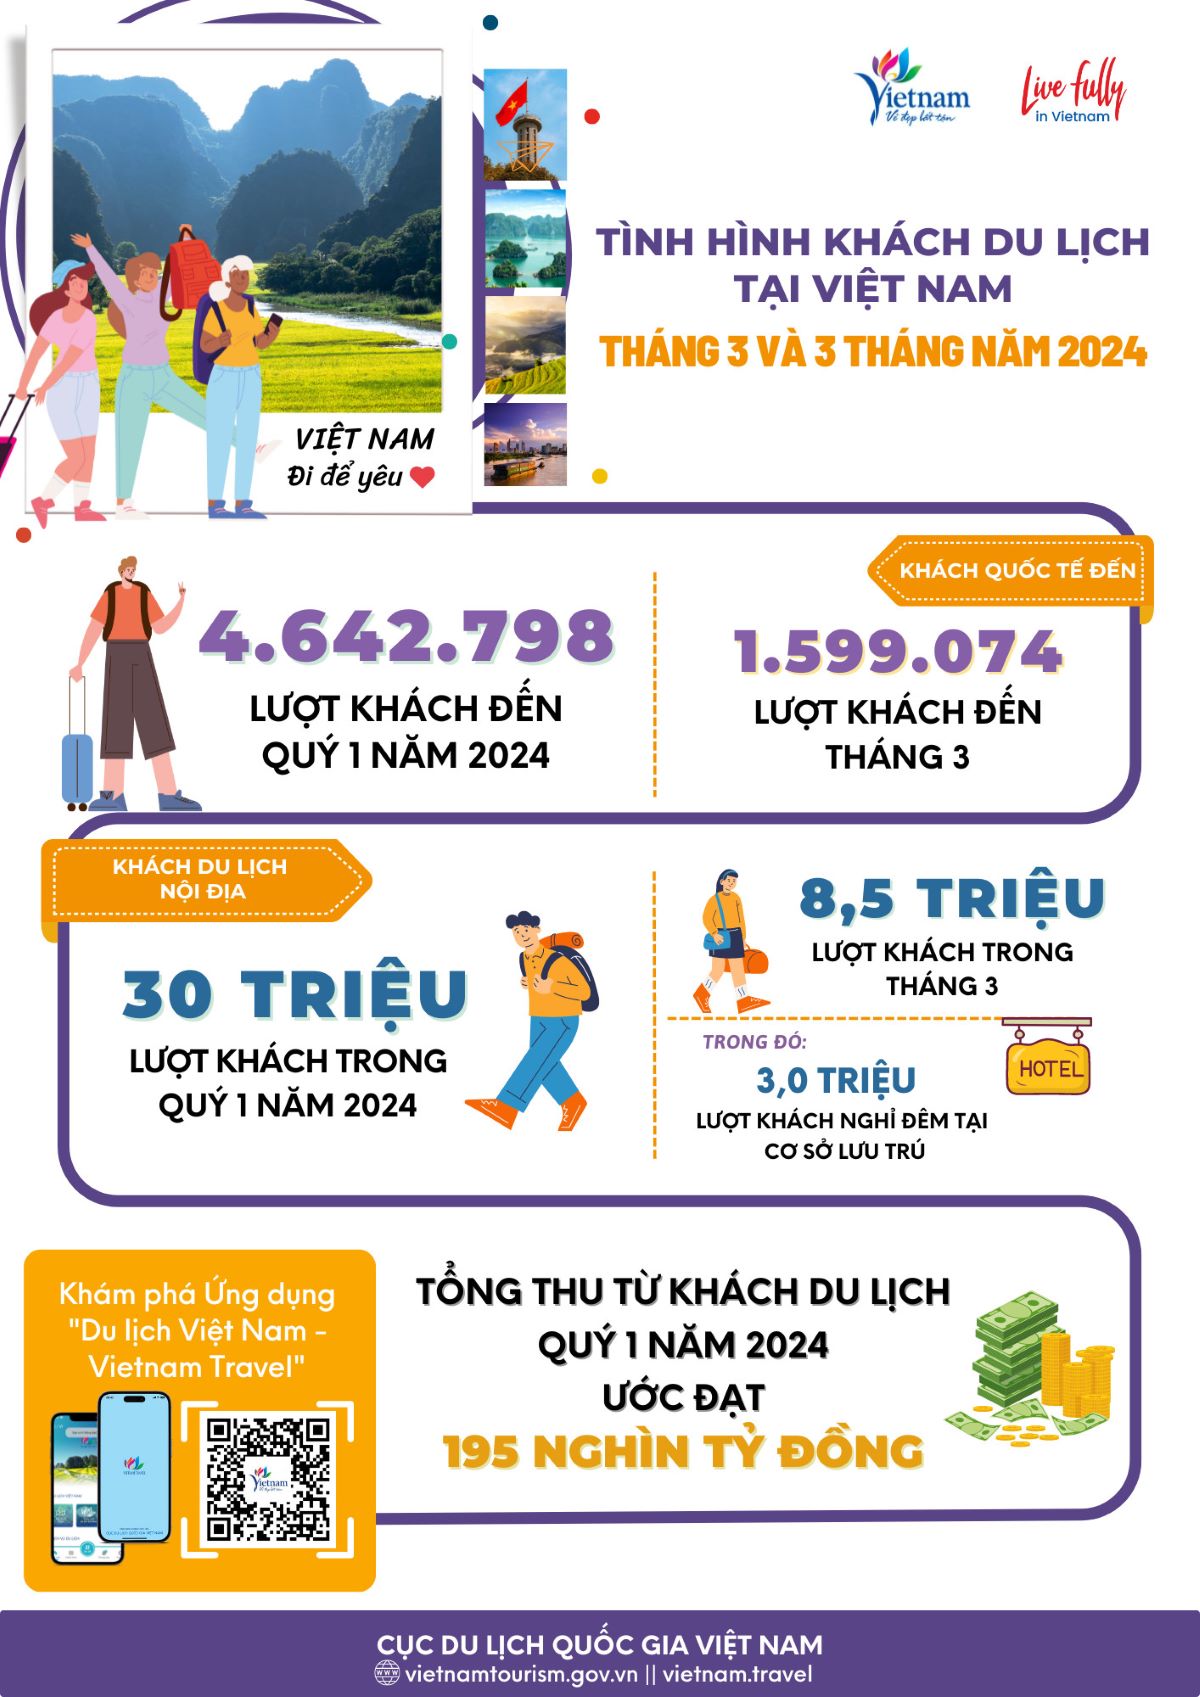 Doanh thu từ khách du lịch 3 tháng đầu năm 2024 ước đạt 195.000 tỷ đồng